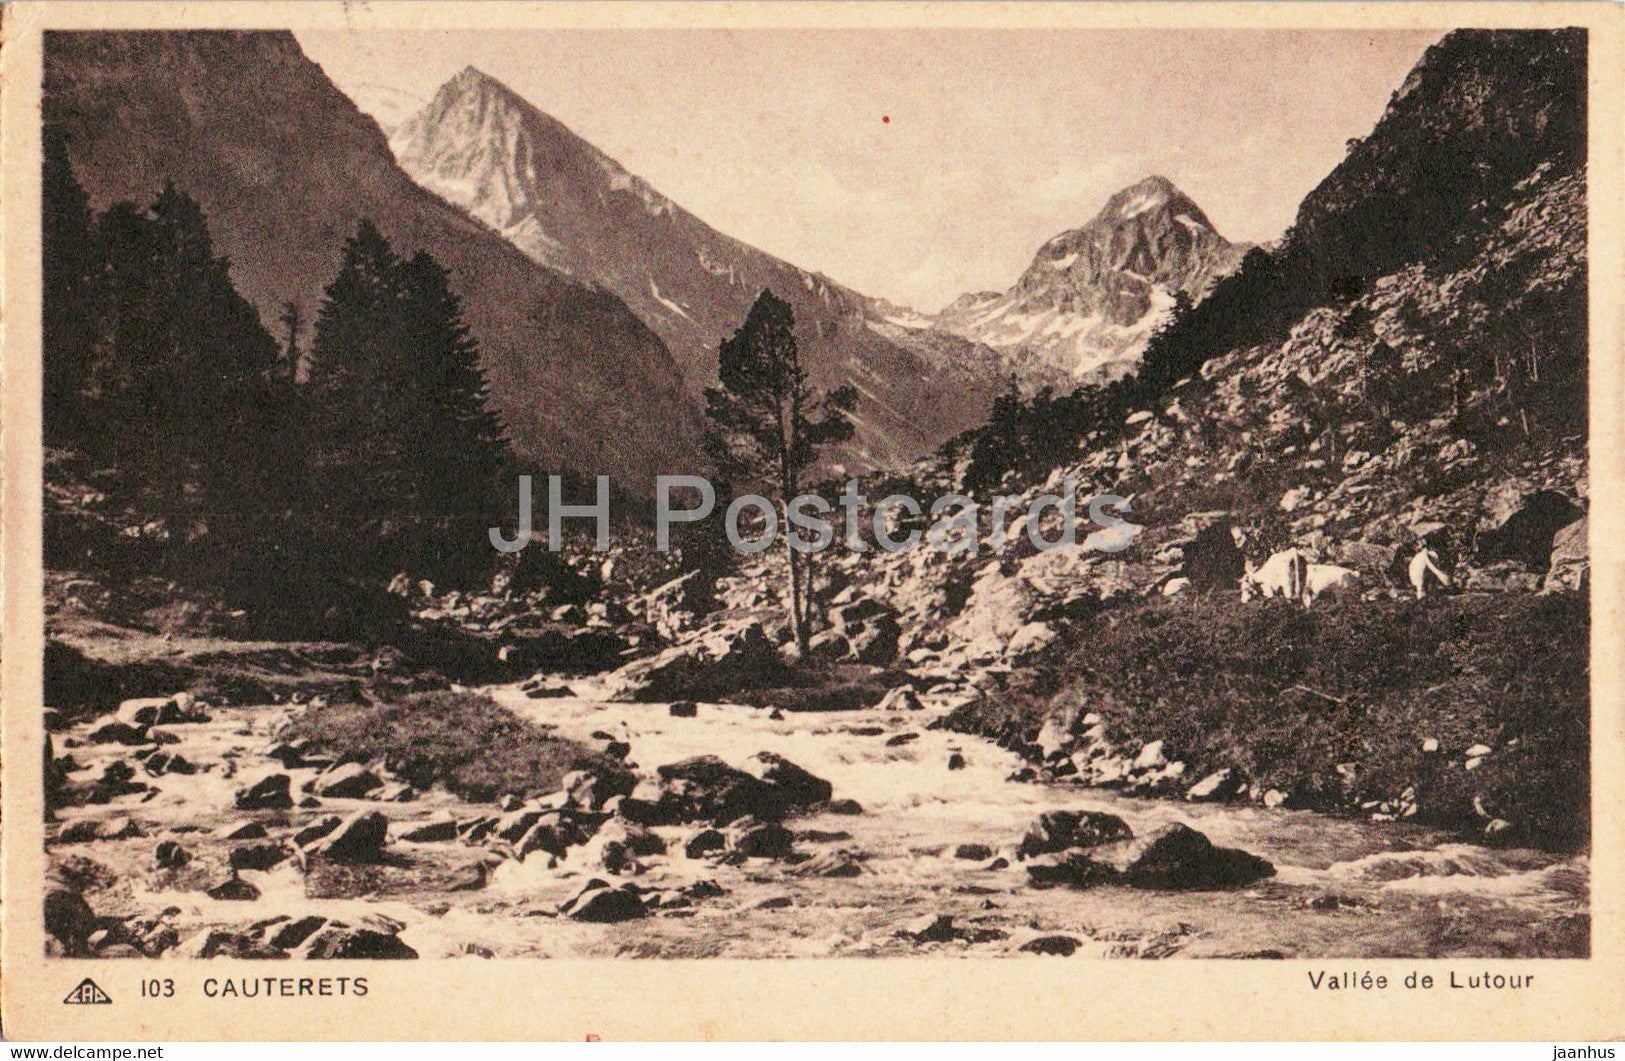 Cauterets - Valle de Lutour - 103 - old postcard - 1938 - France - used - JH Postcards